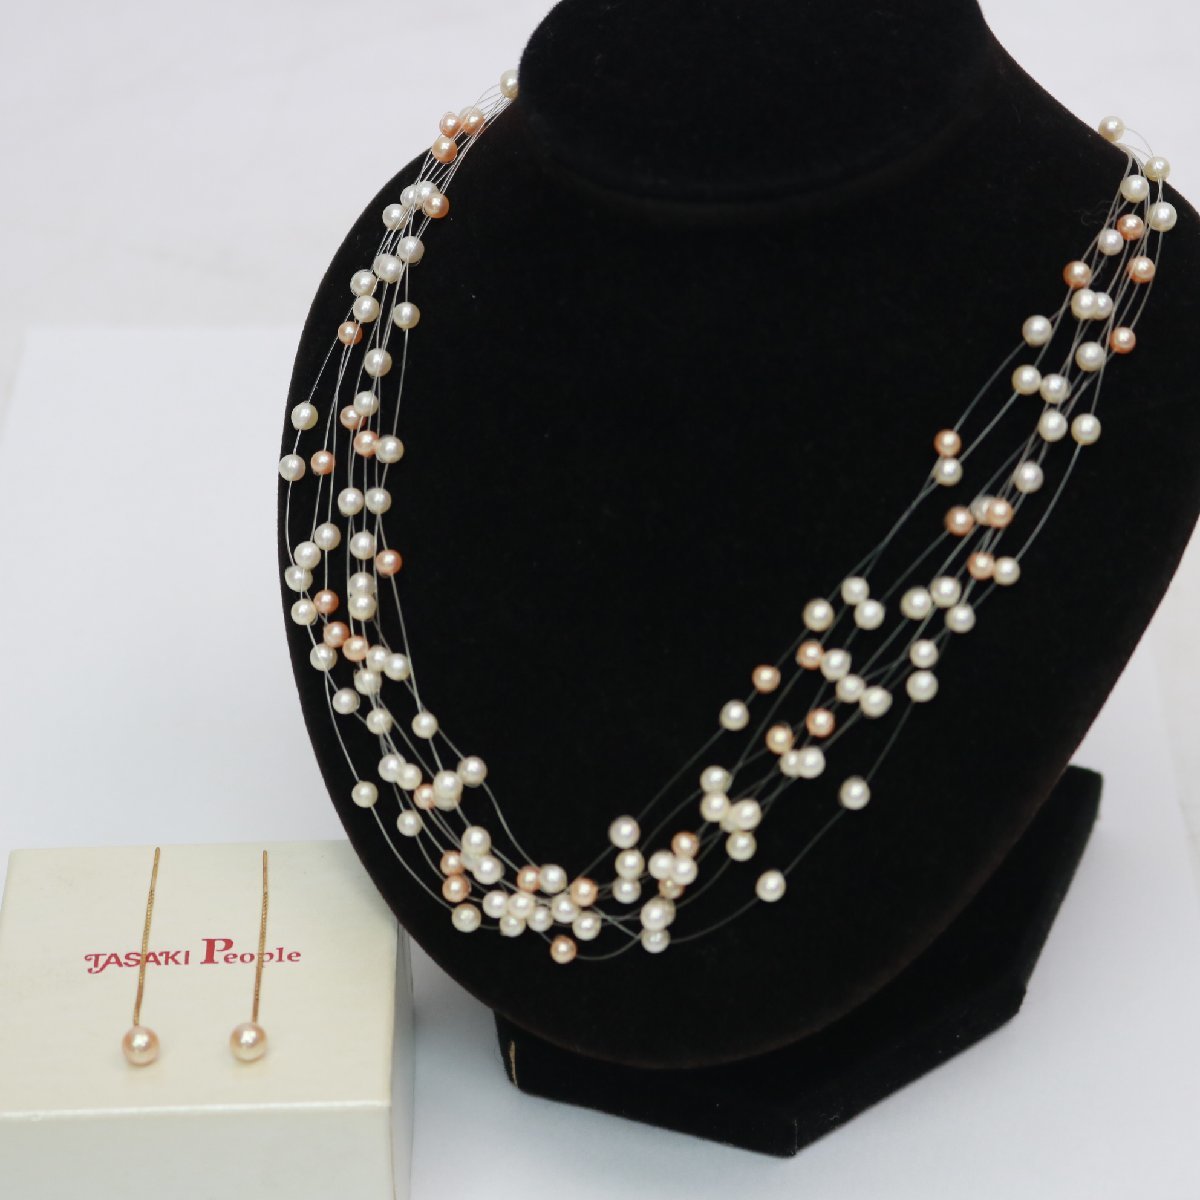 東京都武蔵野市にて 田崎真珠 真珠ネックレス&真珠ピアス   を出張買取させて頂きました。